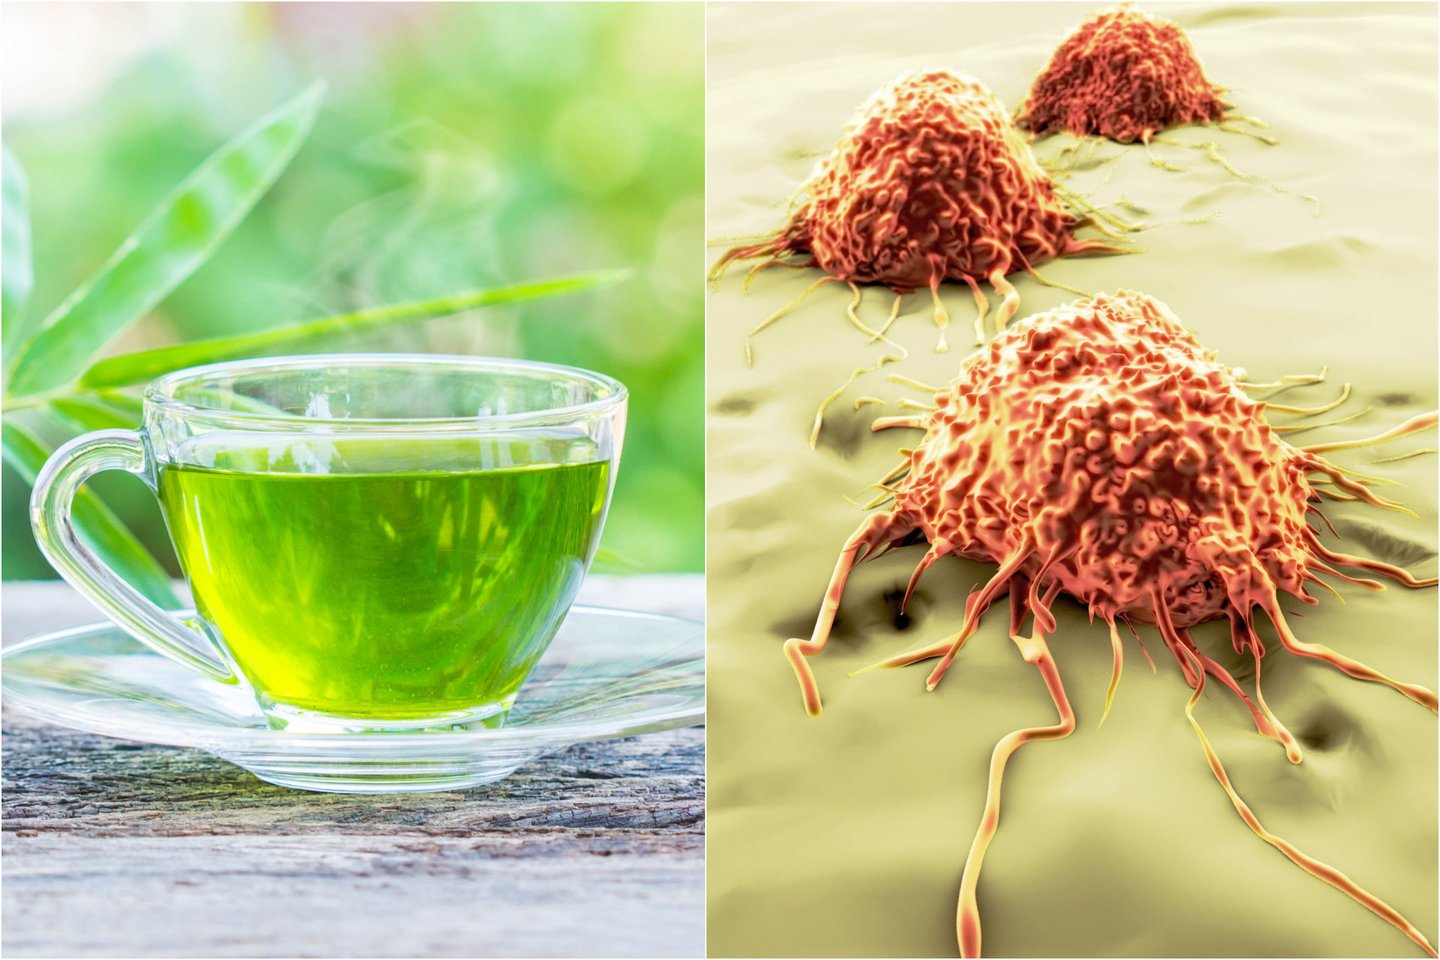  Nanodalelės, esančios arbatos krūmo lapuose, gali apsigyventi ir iš vidaus sunaikinti plaučių vėžines ląsteles.<br> 123rf.com nuotr.